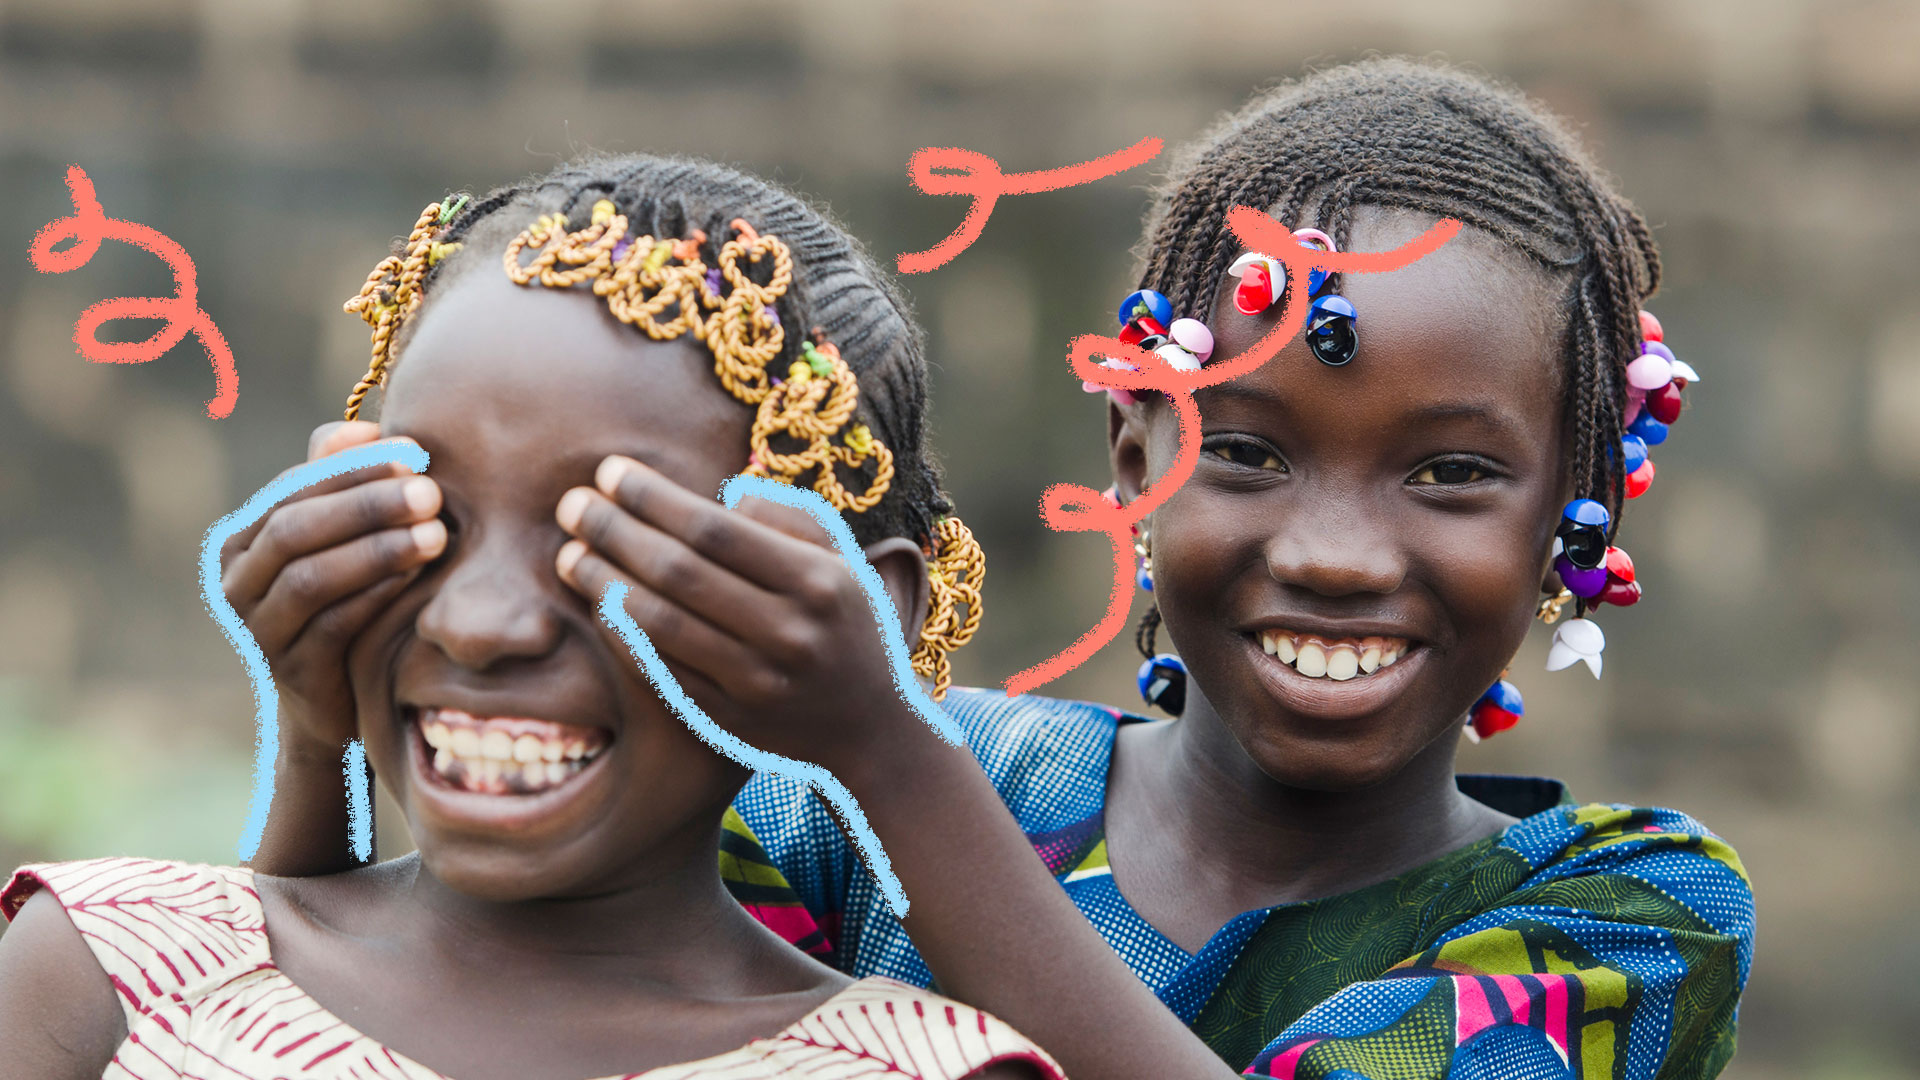 Brincadeiras africanas: foto de duas meninas negras, que brincam de tapar os olhos uma da outra. Elas estão sorrindo e se divertindo.